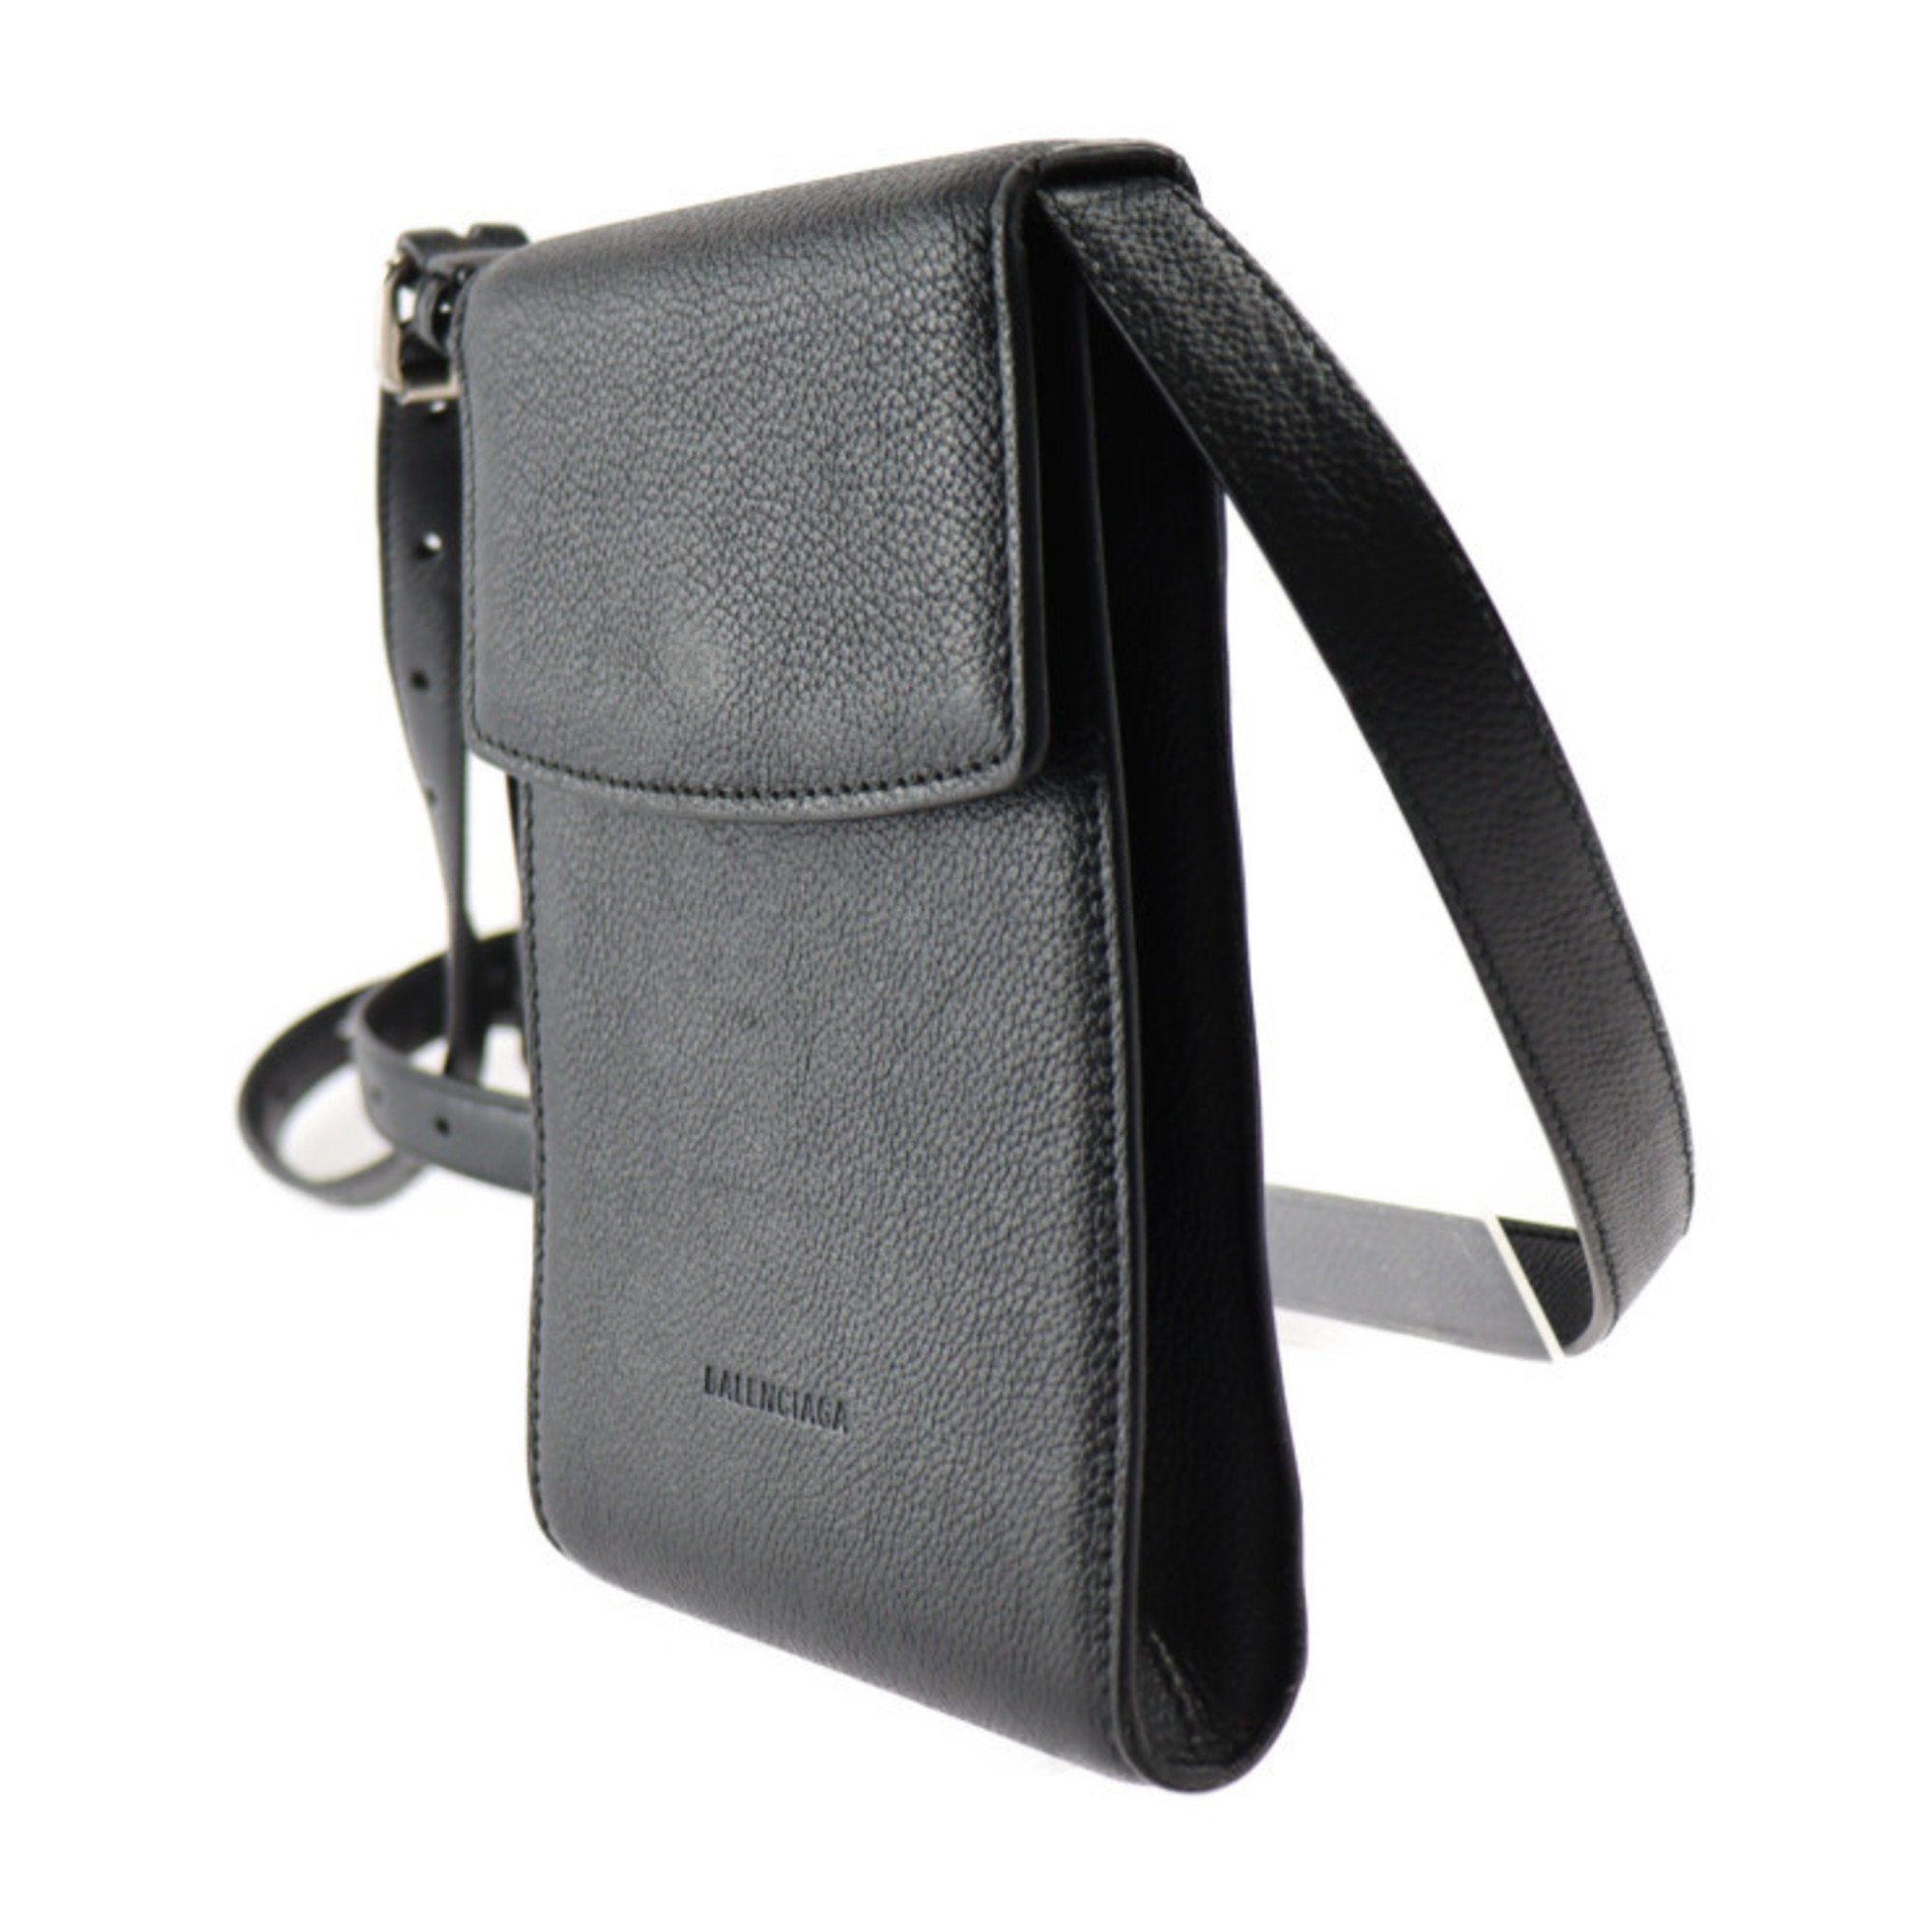 BALENCIAGA Ghost Phone Holder Shoulder Bag 618868 Leather Black Silver Hardware Smartphone Case Pochette